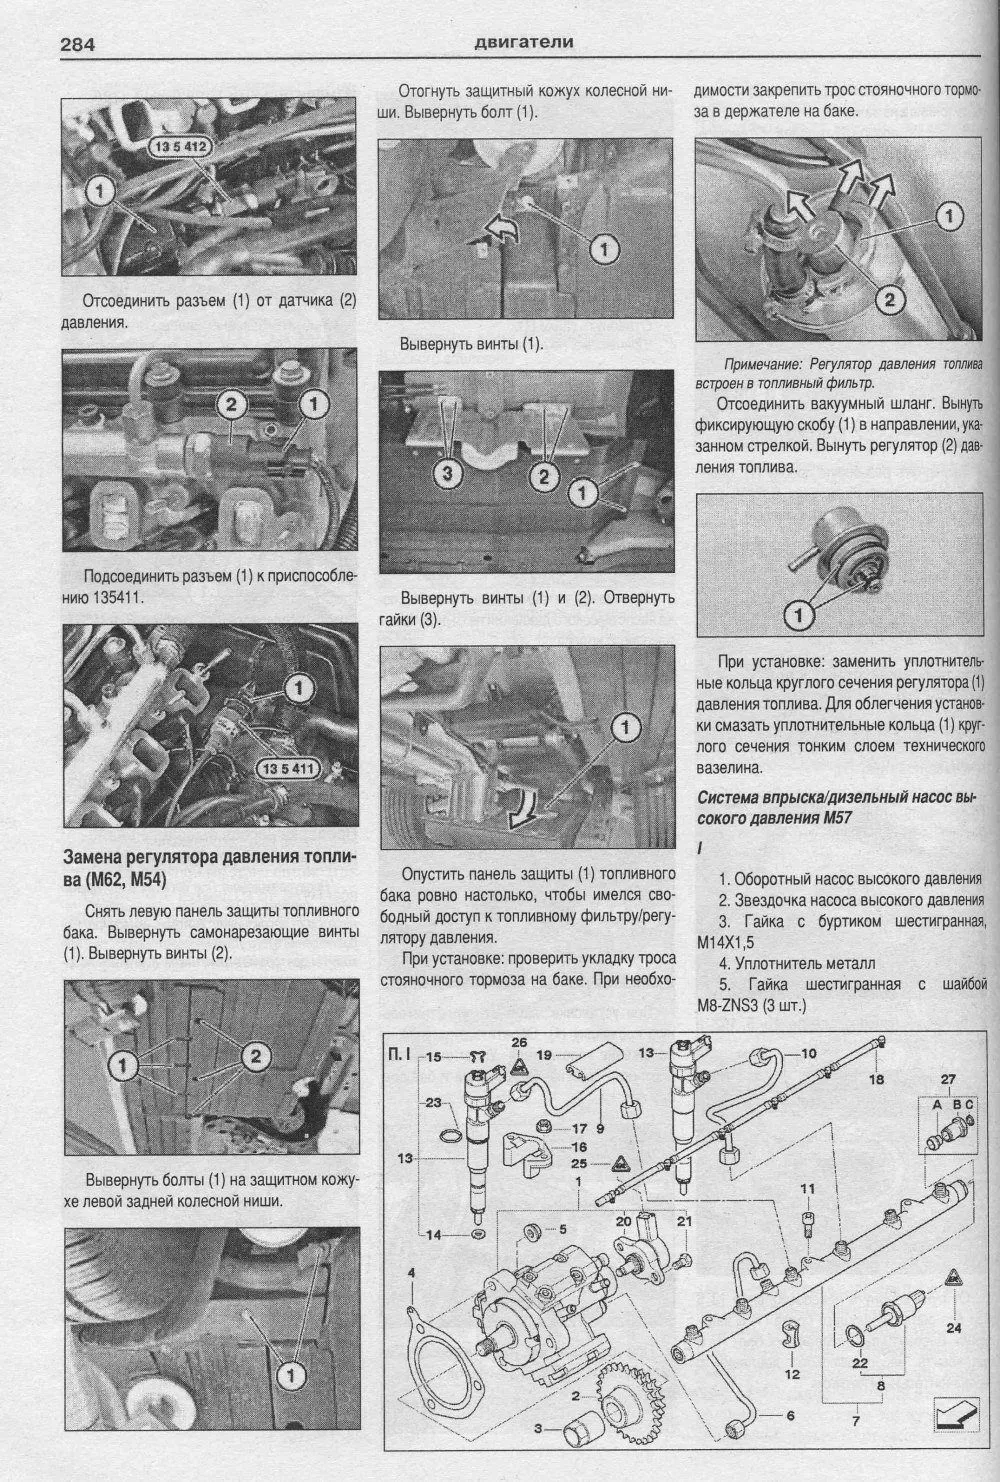 Книга BMW X5 Е53 1999-2006 бензин, дизель, электросхемы. Руководство по ремонту и эксплуатации автомобиля. Атласы автомобилей